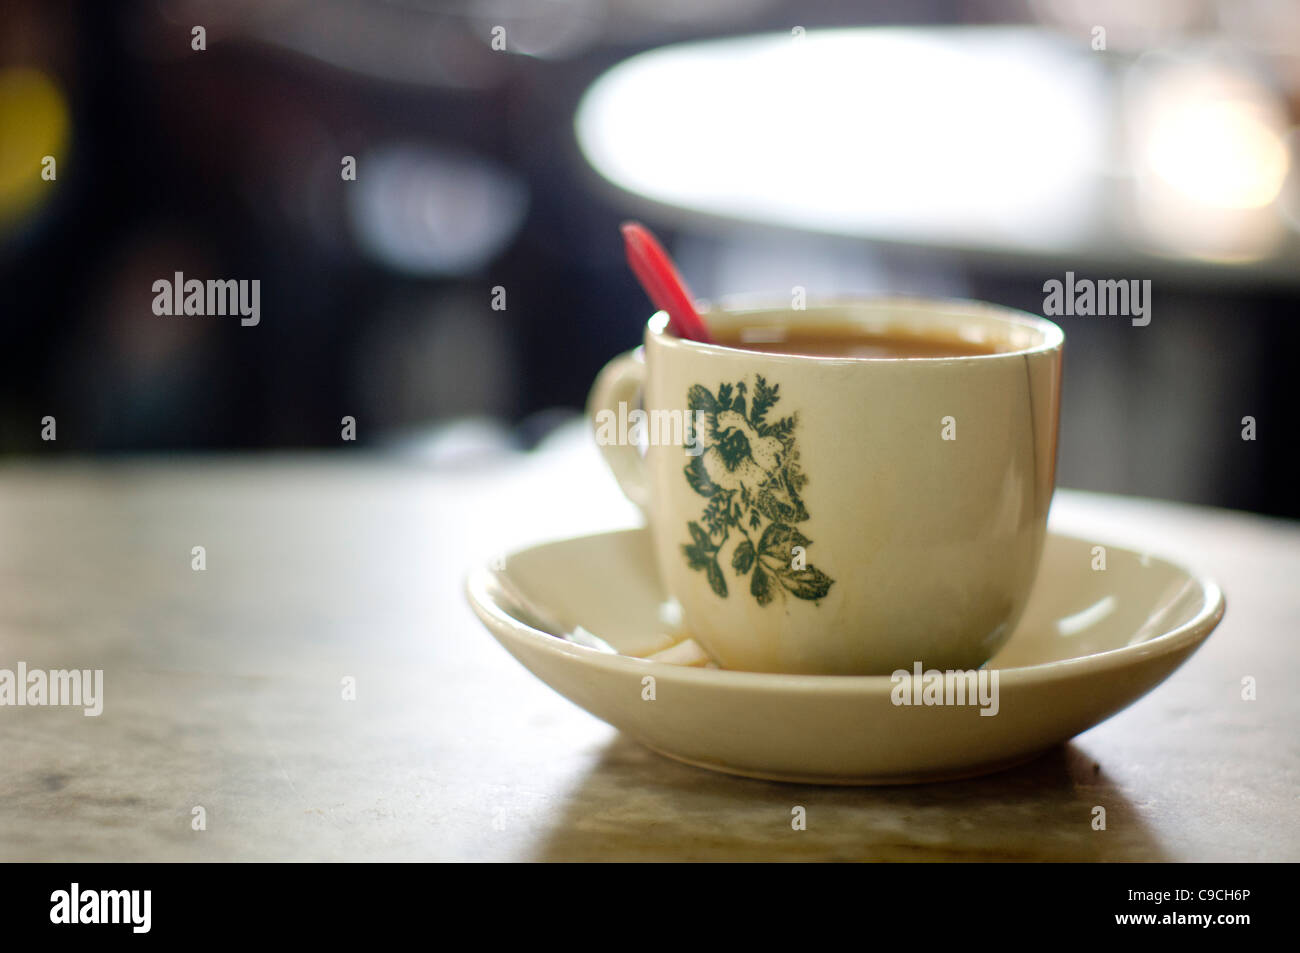 Un oltremare stile cinese di caffè che si trovano in Malesia e Singapore, è di solito servito in una tazza con fiori stampati. Foto Stock